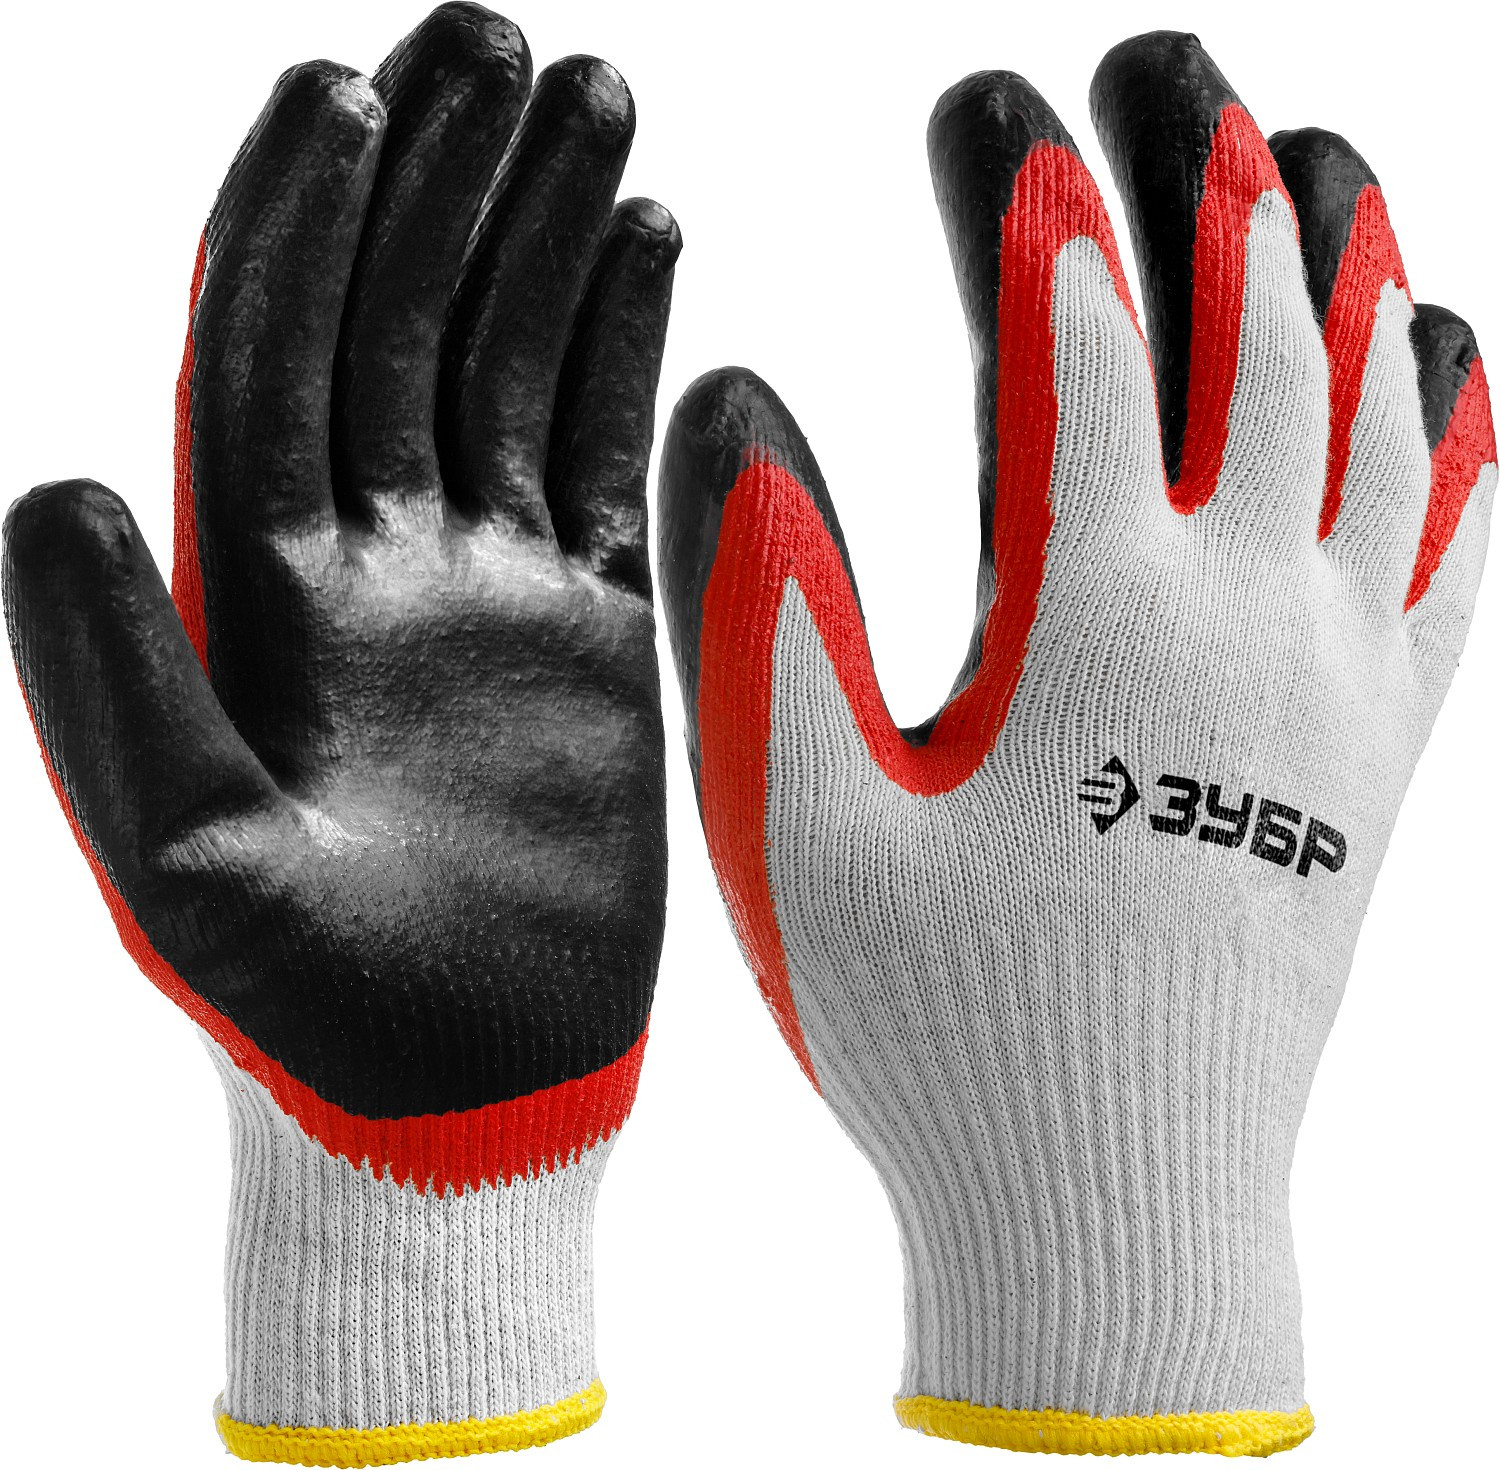 ЗУБР х2 ЗАЩИТА, S-M, х/б перчатки с двойным латексным обливом, повышенной износостойкости, 13 класс (11459-S)